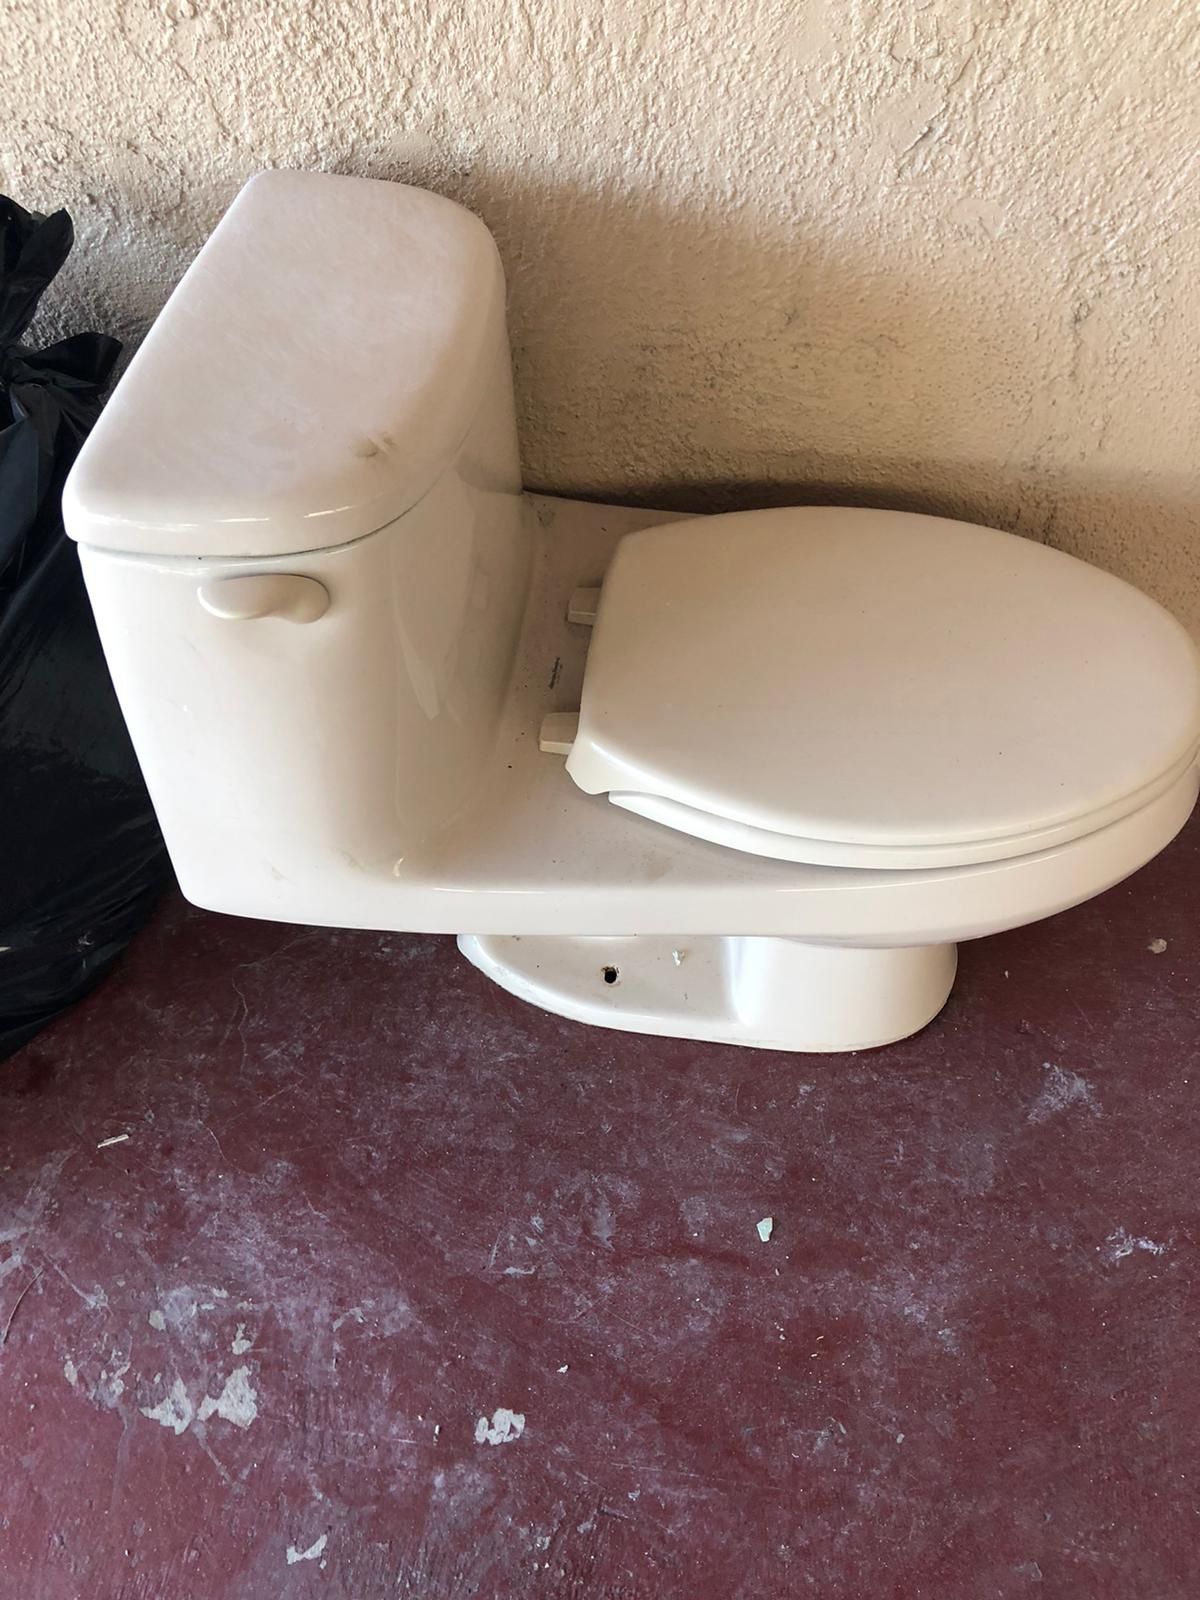 Free toilet